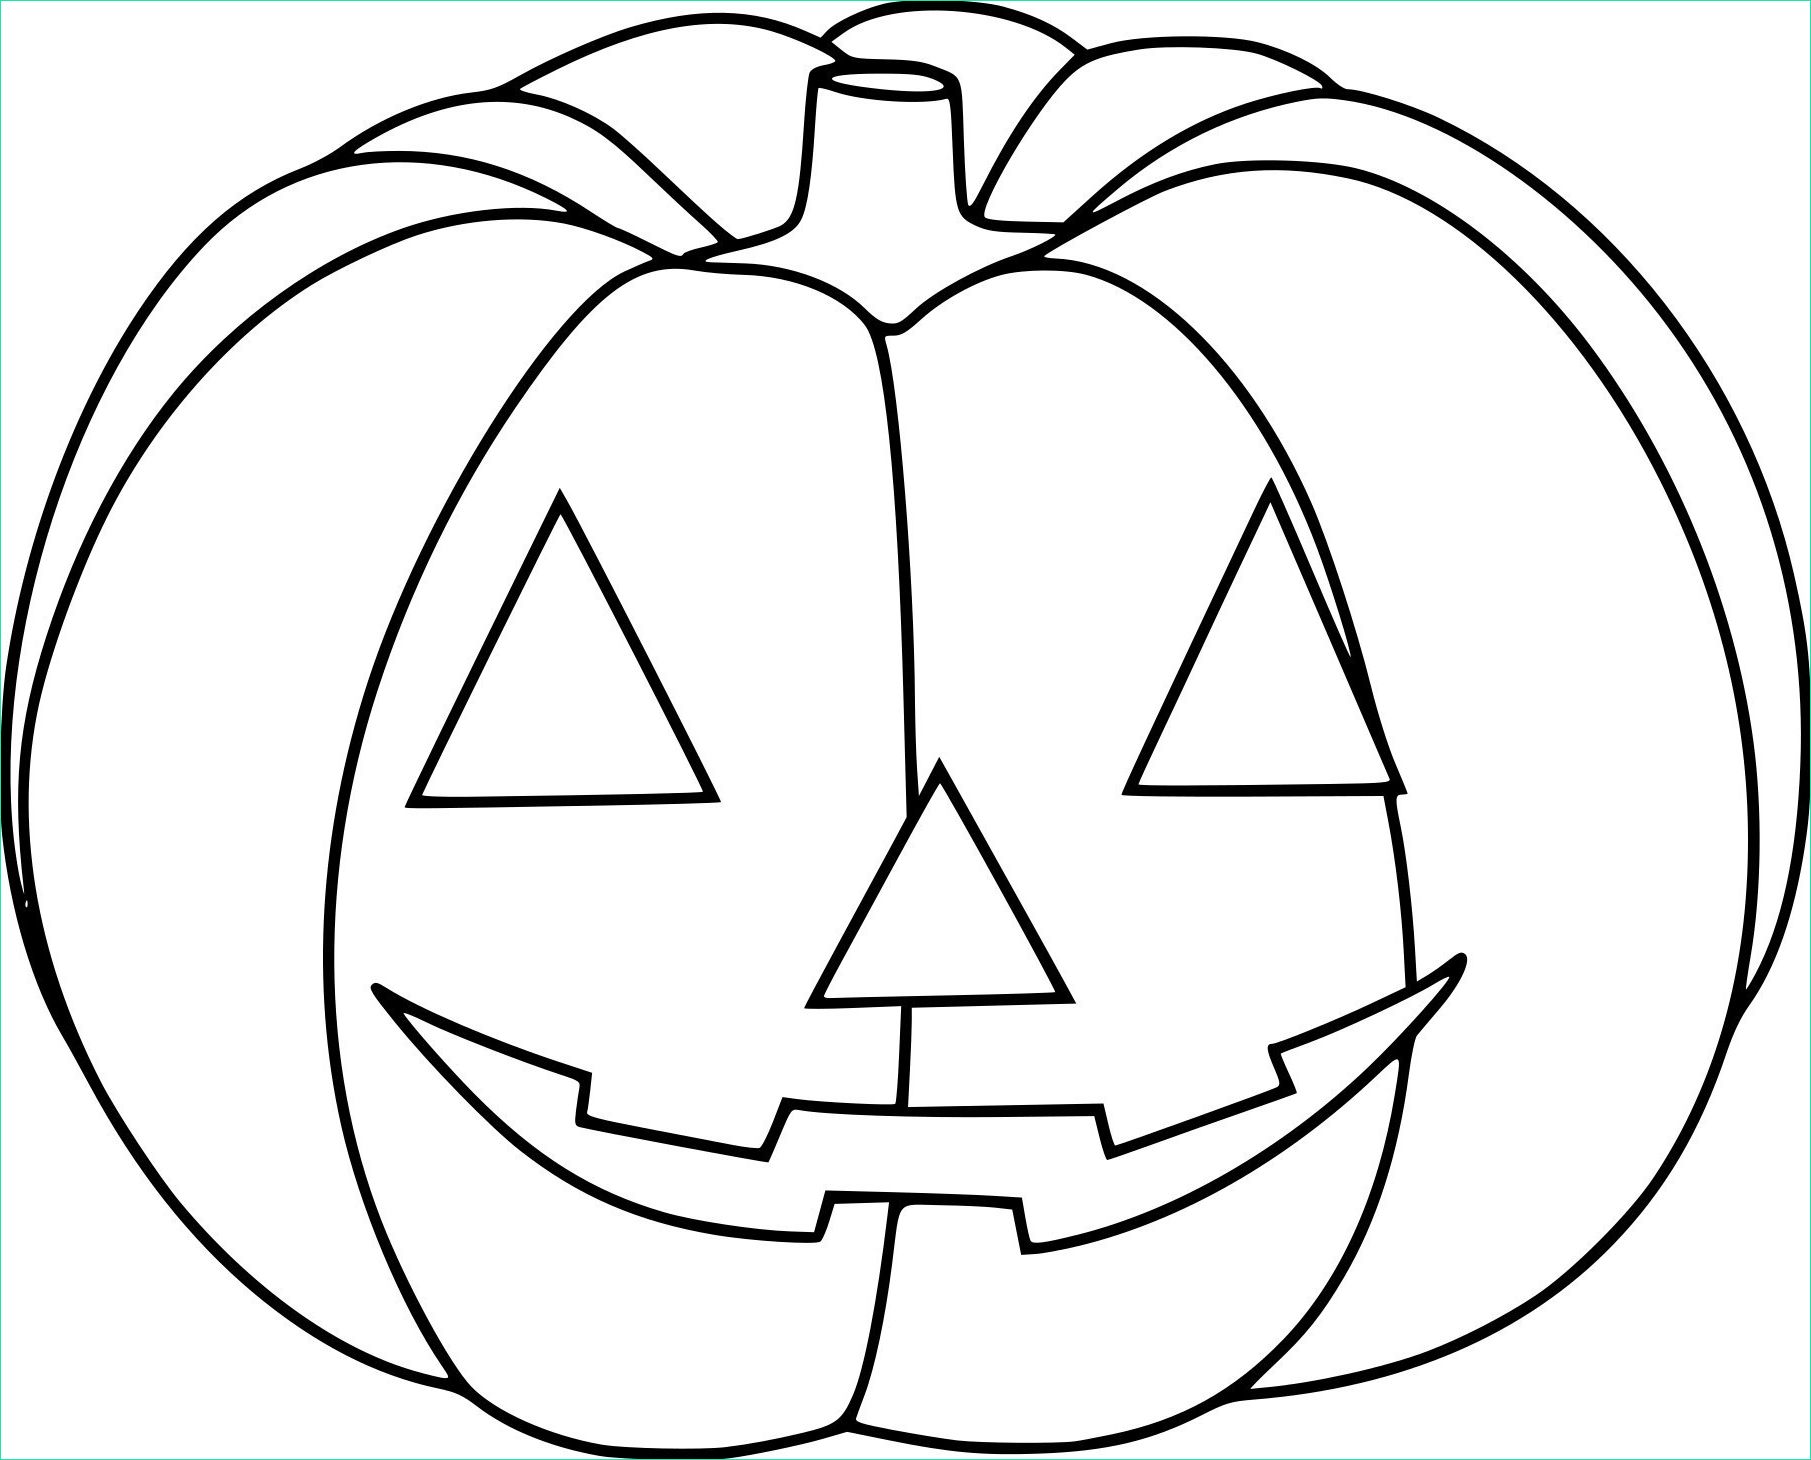 coloriage de citrouille pour halloween a imprimer in dessin a concernant dessin citrouille halloween imprimer